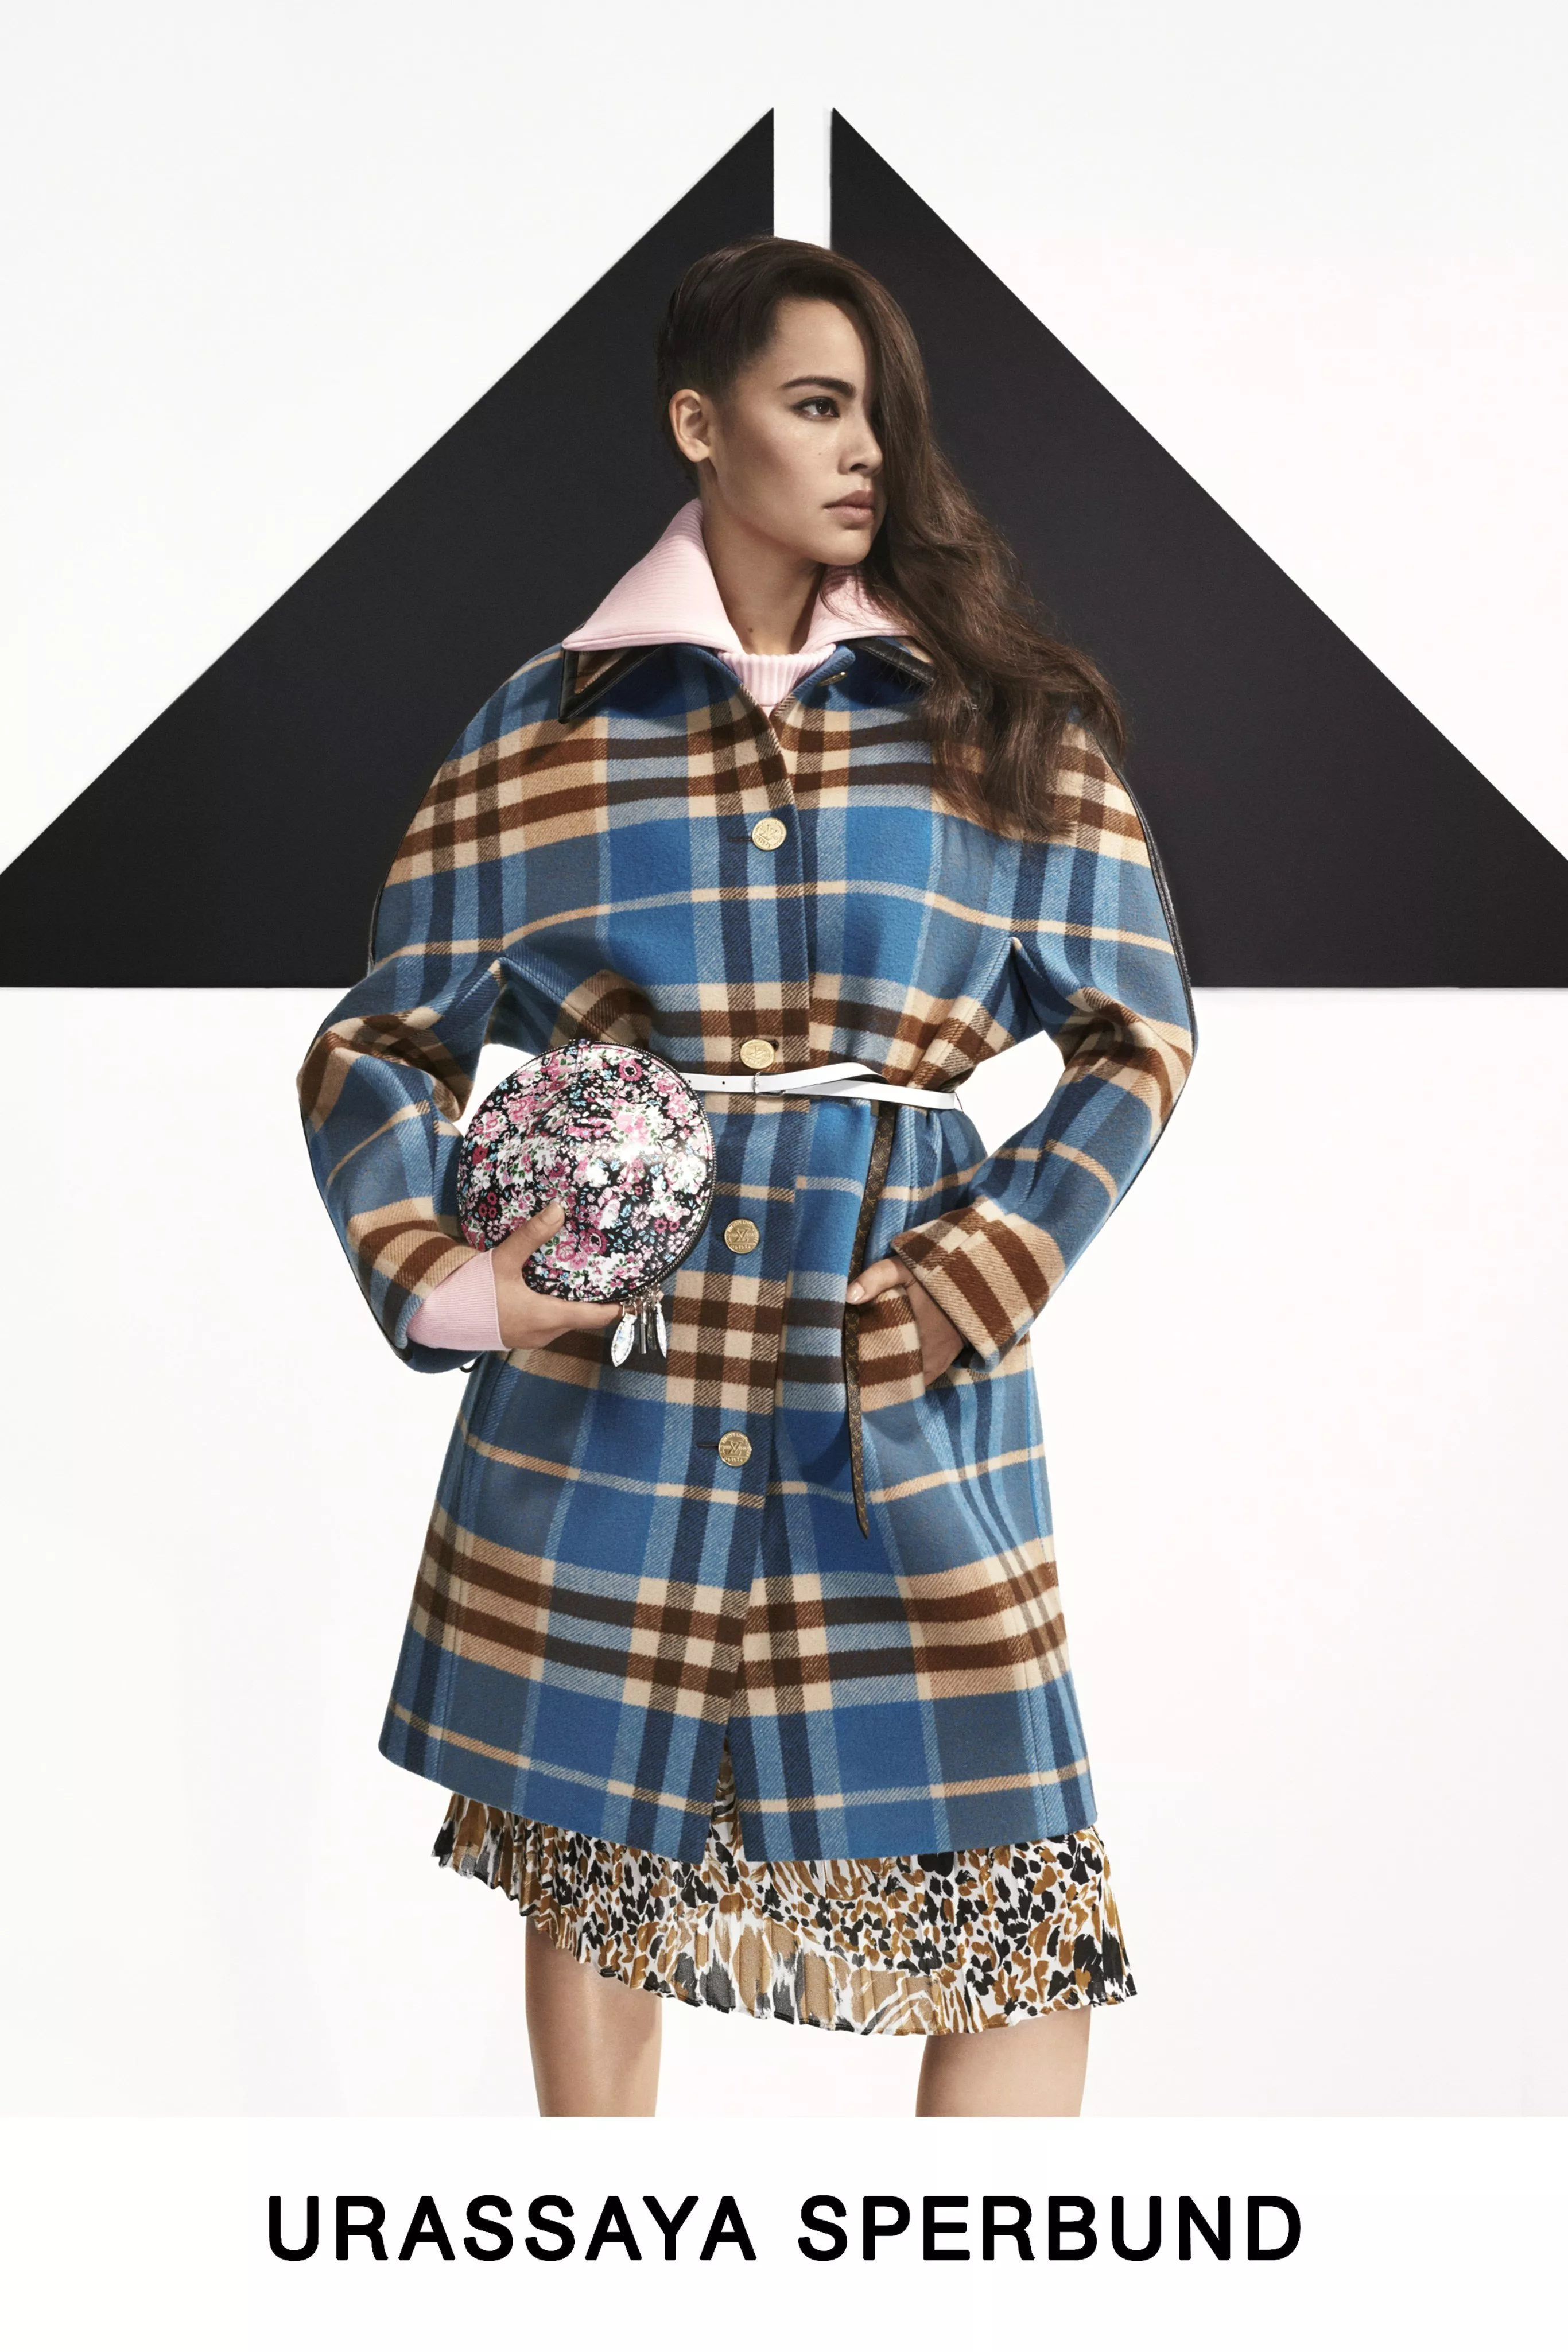 مجموعة Louis Vuitton التحضيرية لخريف 2019: تنسيقات تعكس هوية كلّ نجمة